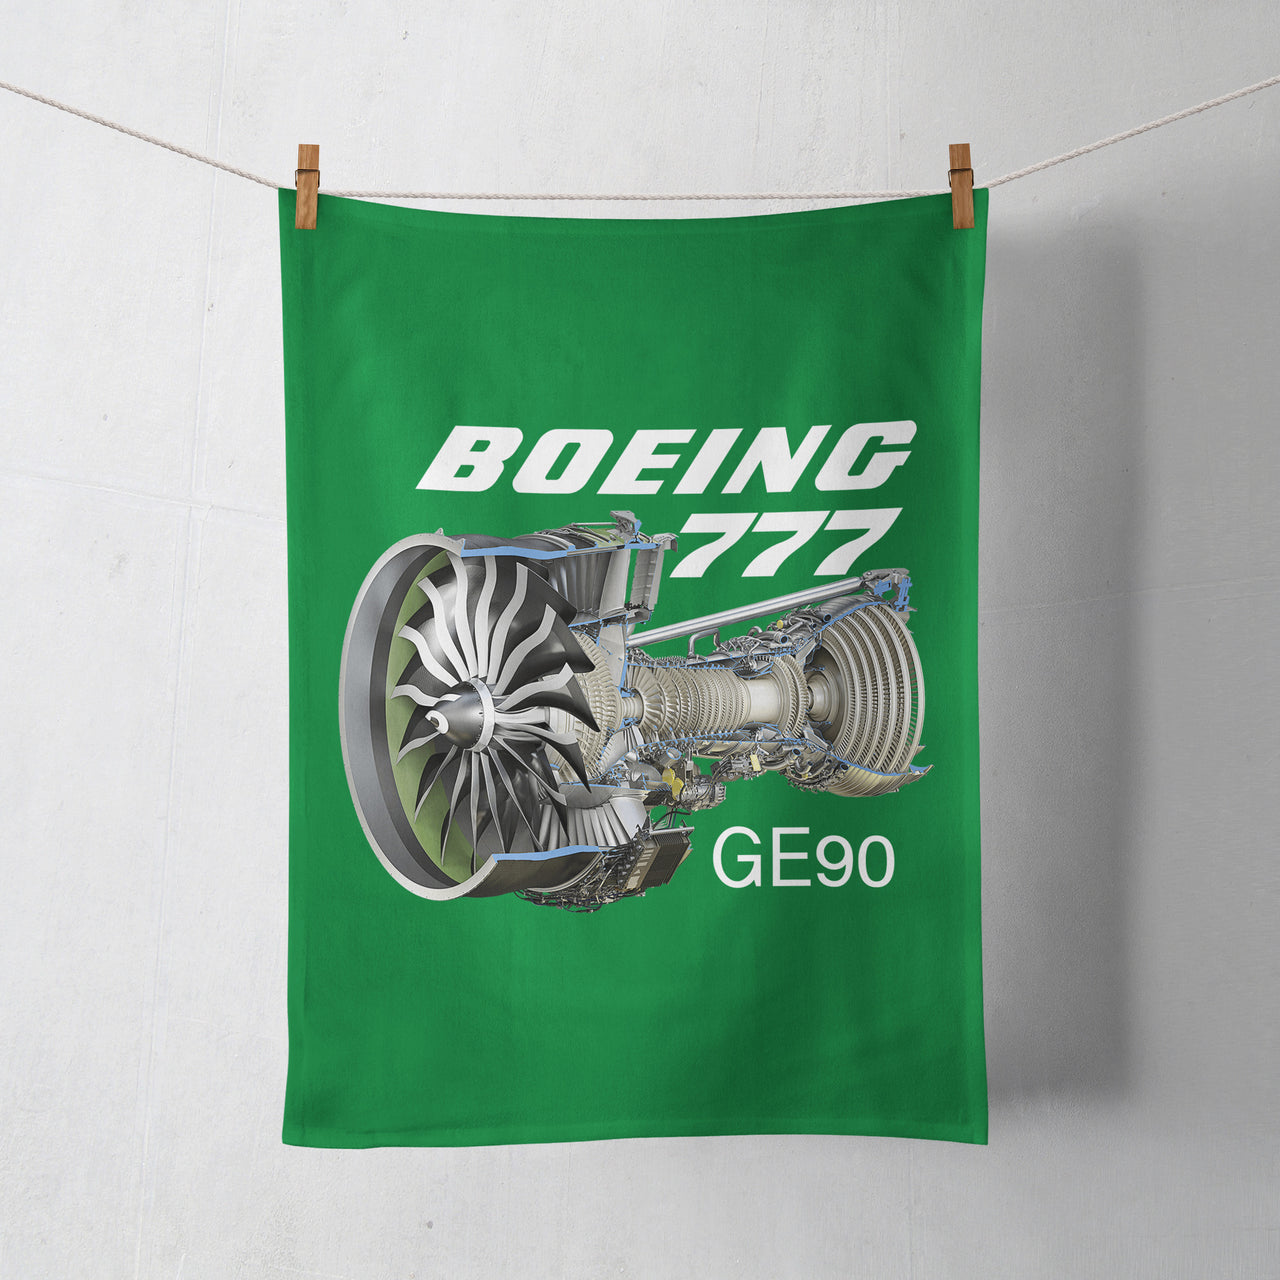 Boeing 777 & GE90 Engine Designed Towels